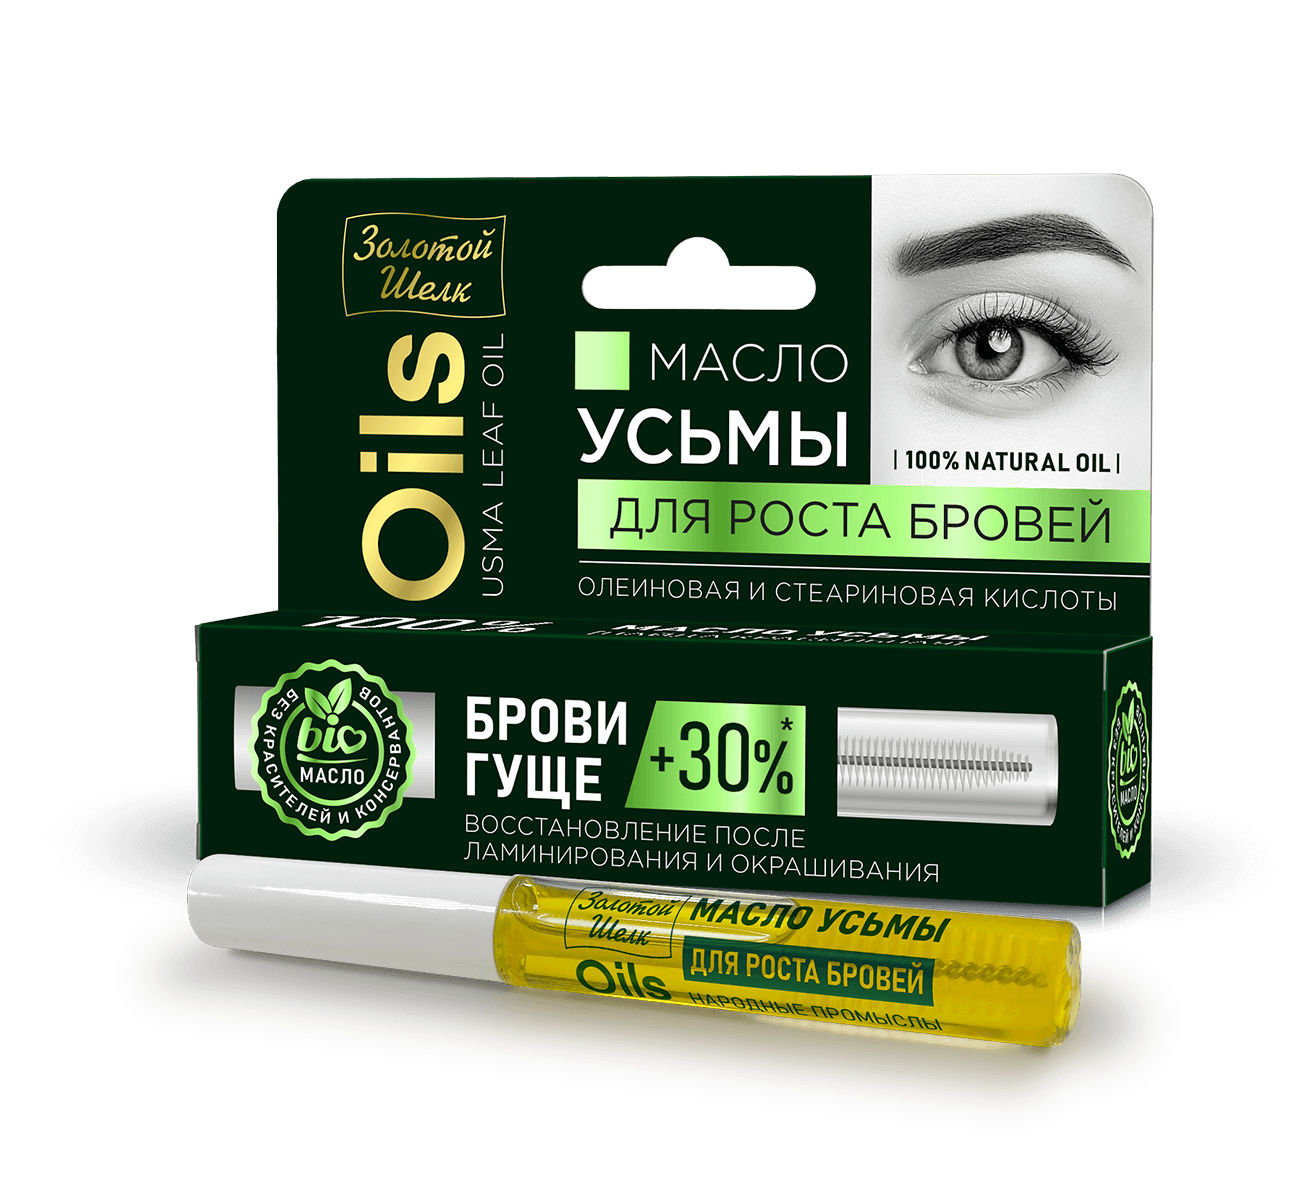 Usma oil for eyebrow growth Zolotoy Shelk - narodkosmetika.com